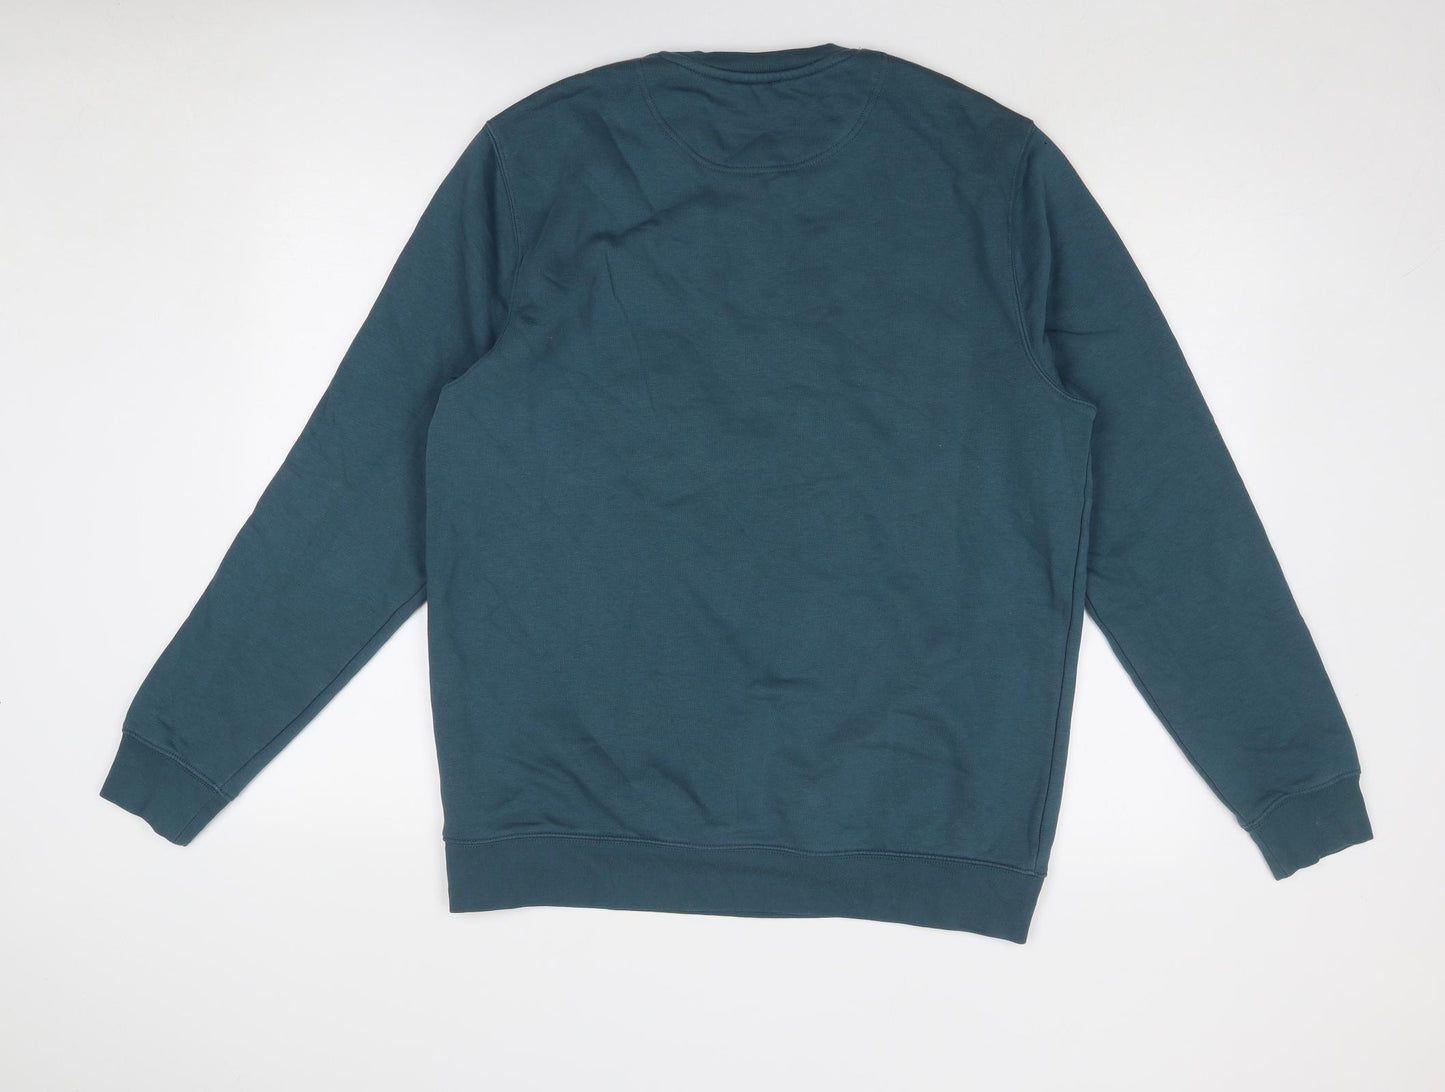 Stanley/Stella Womens Blue Cotton Pullover Sweatshirt Size XL Pullover - Hattie Clark